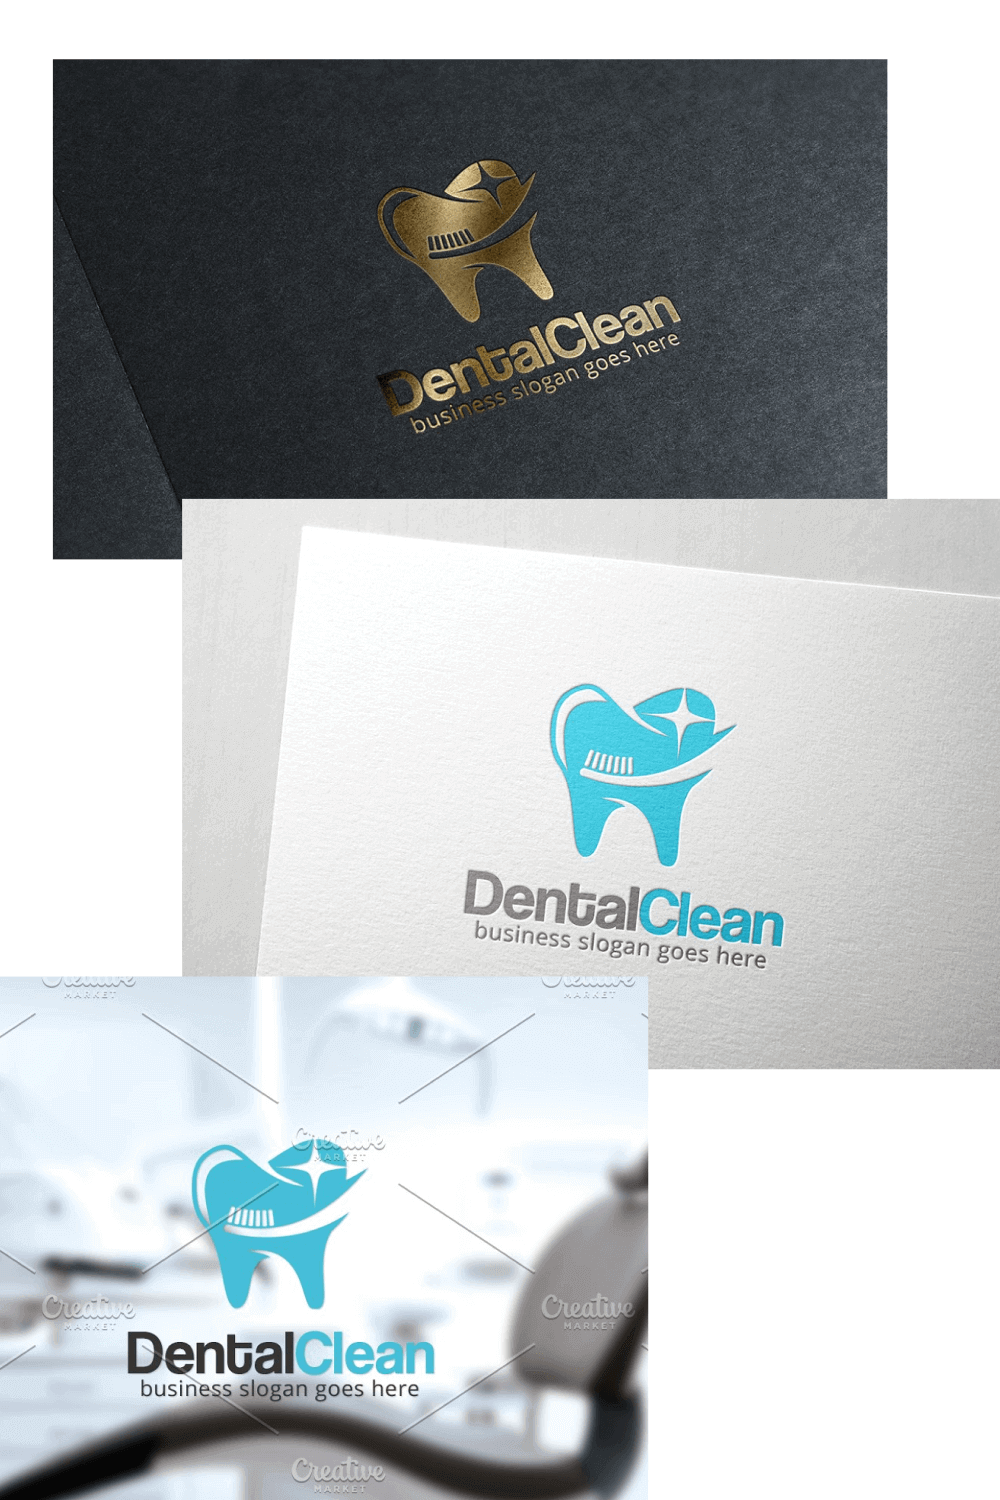 Slides of DentalClean.